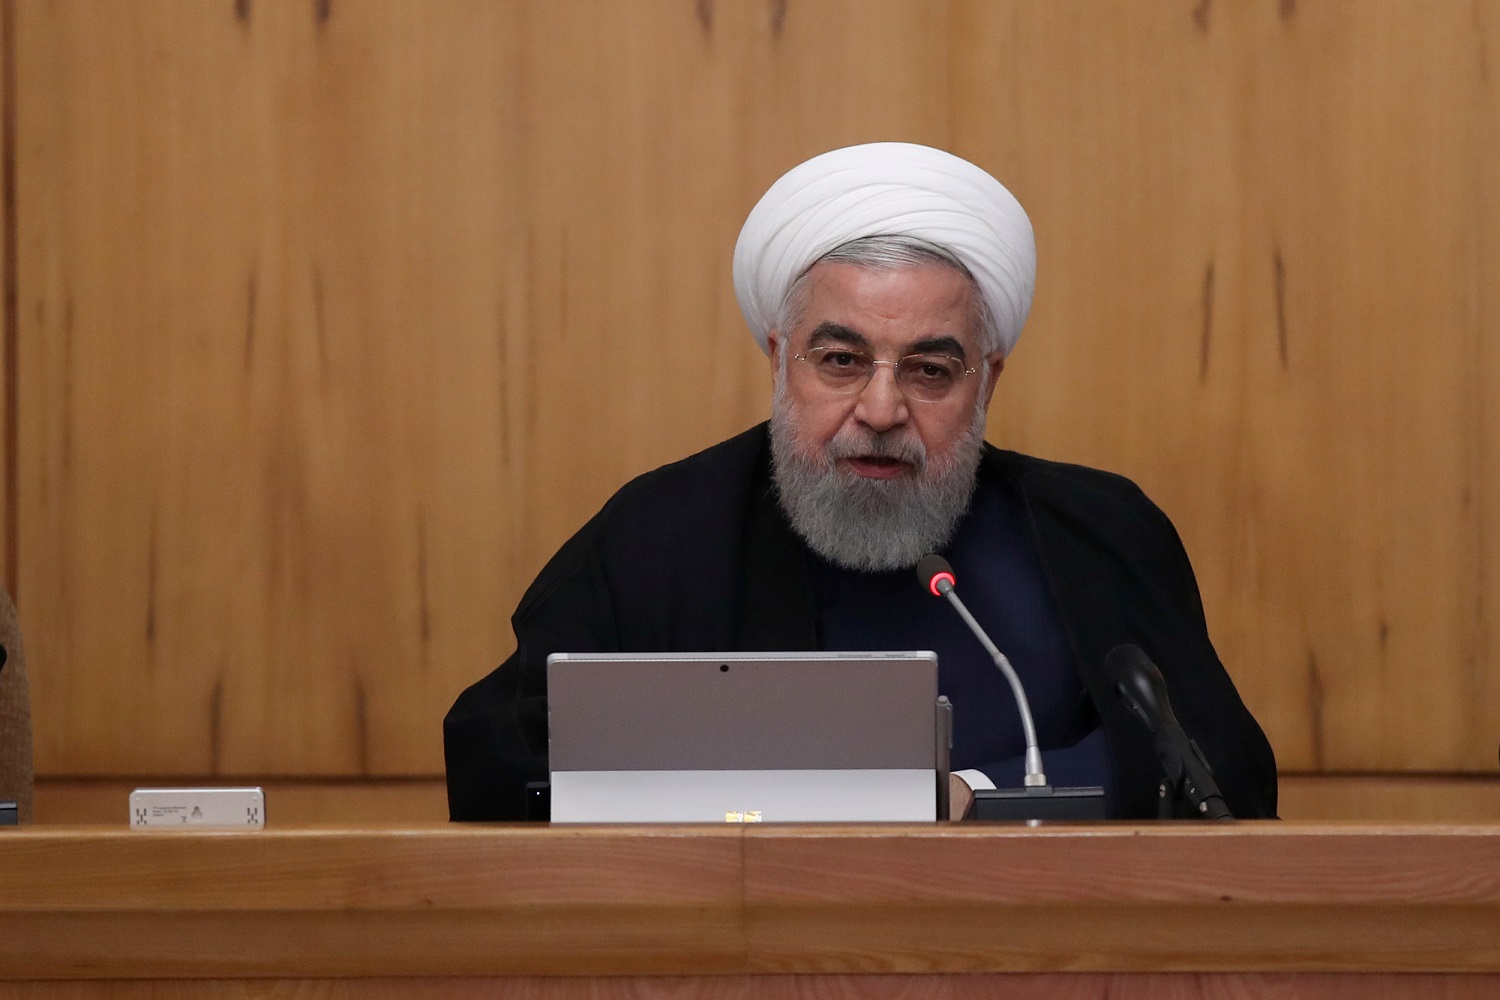  الرئيس الإيراني حسن روحاني خلال اجتماع مجلس الوزراء في طهران. إيران .18 سبتمبر 2019.رويترز